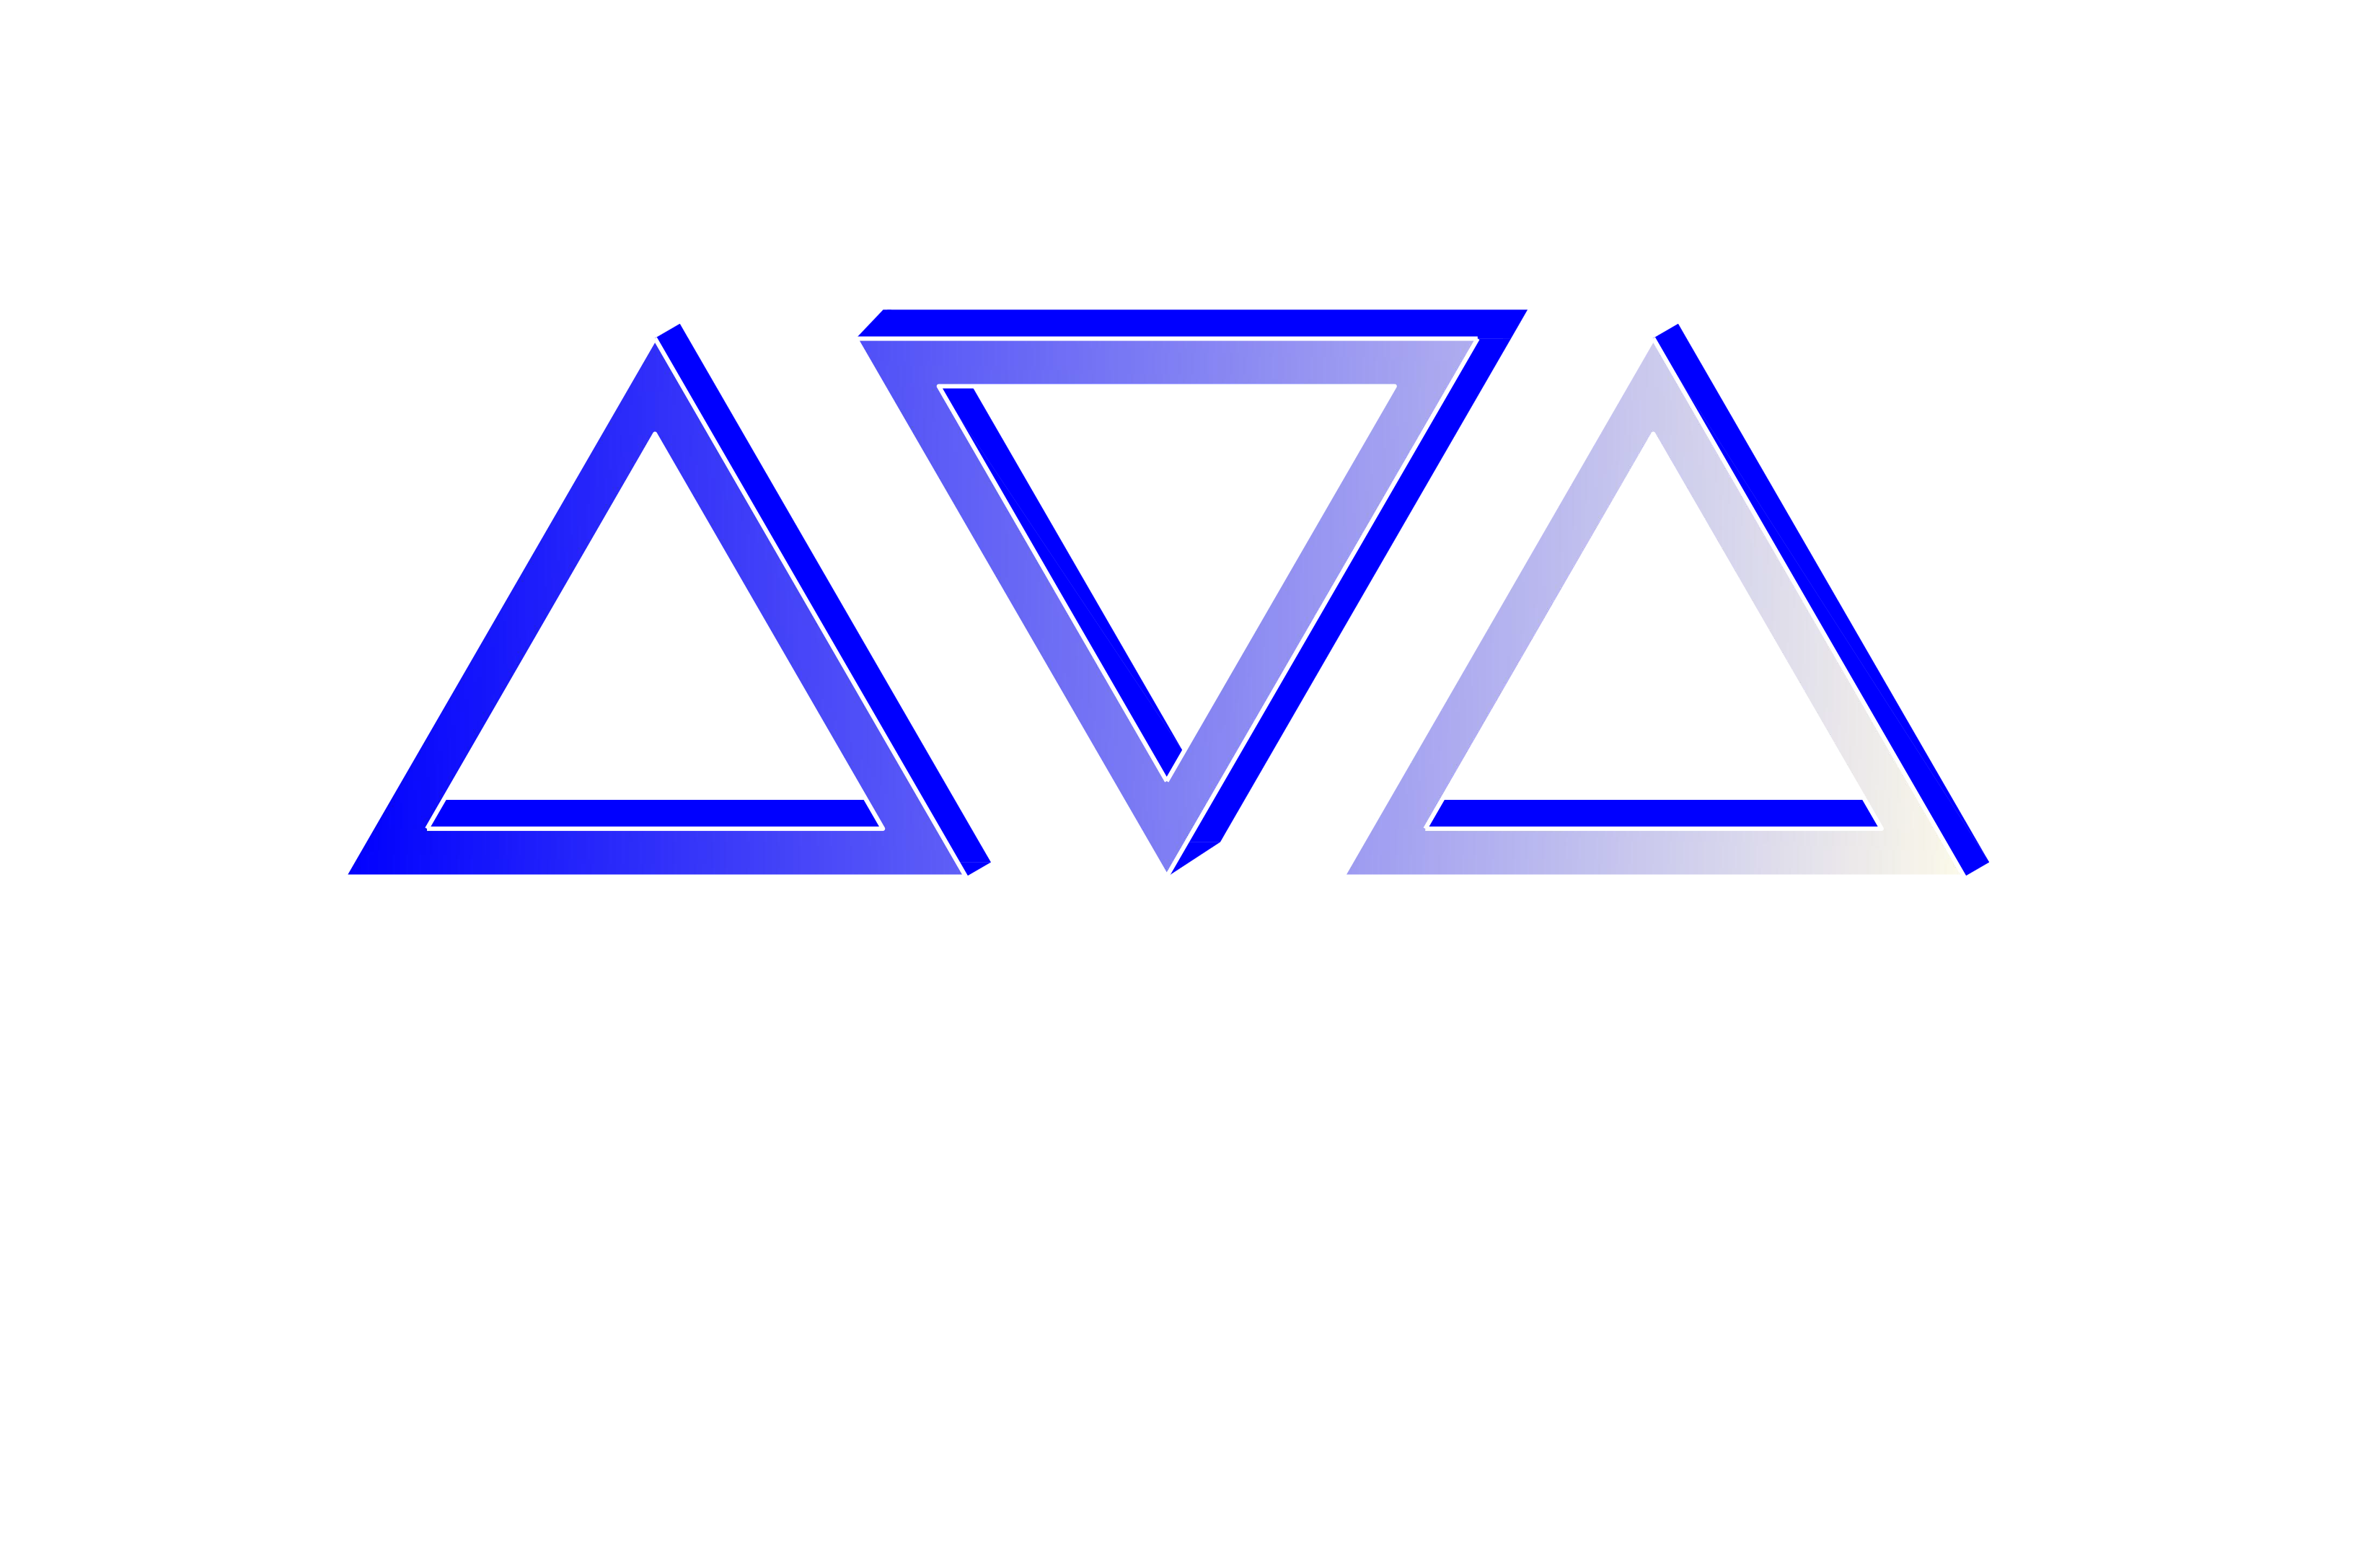 Pan American Engineers